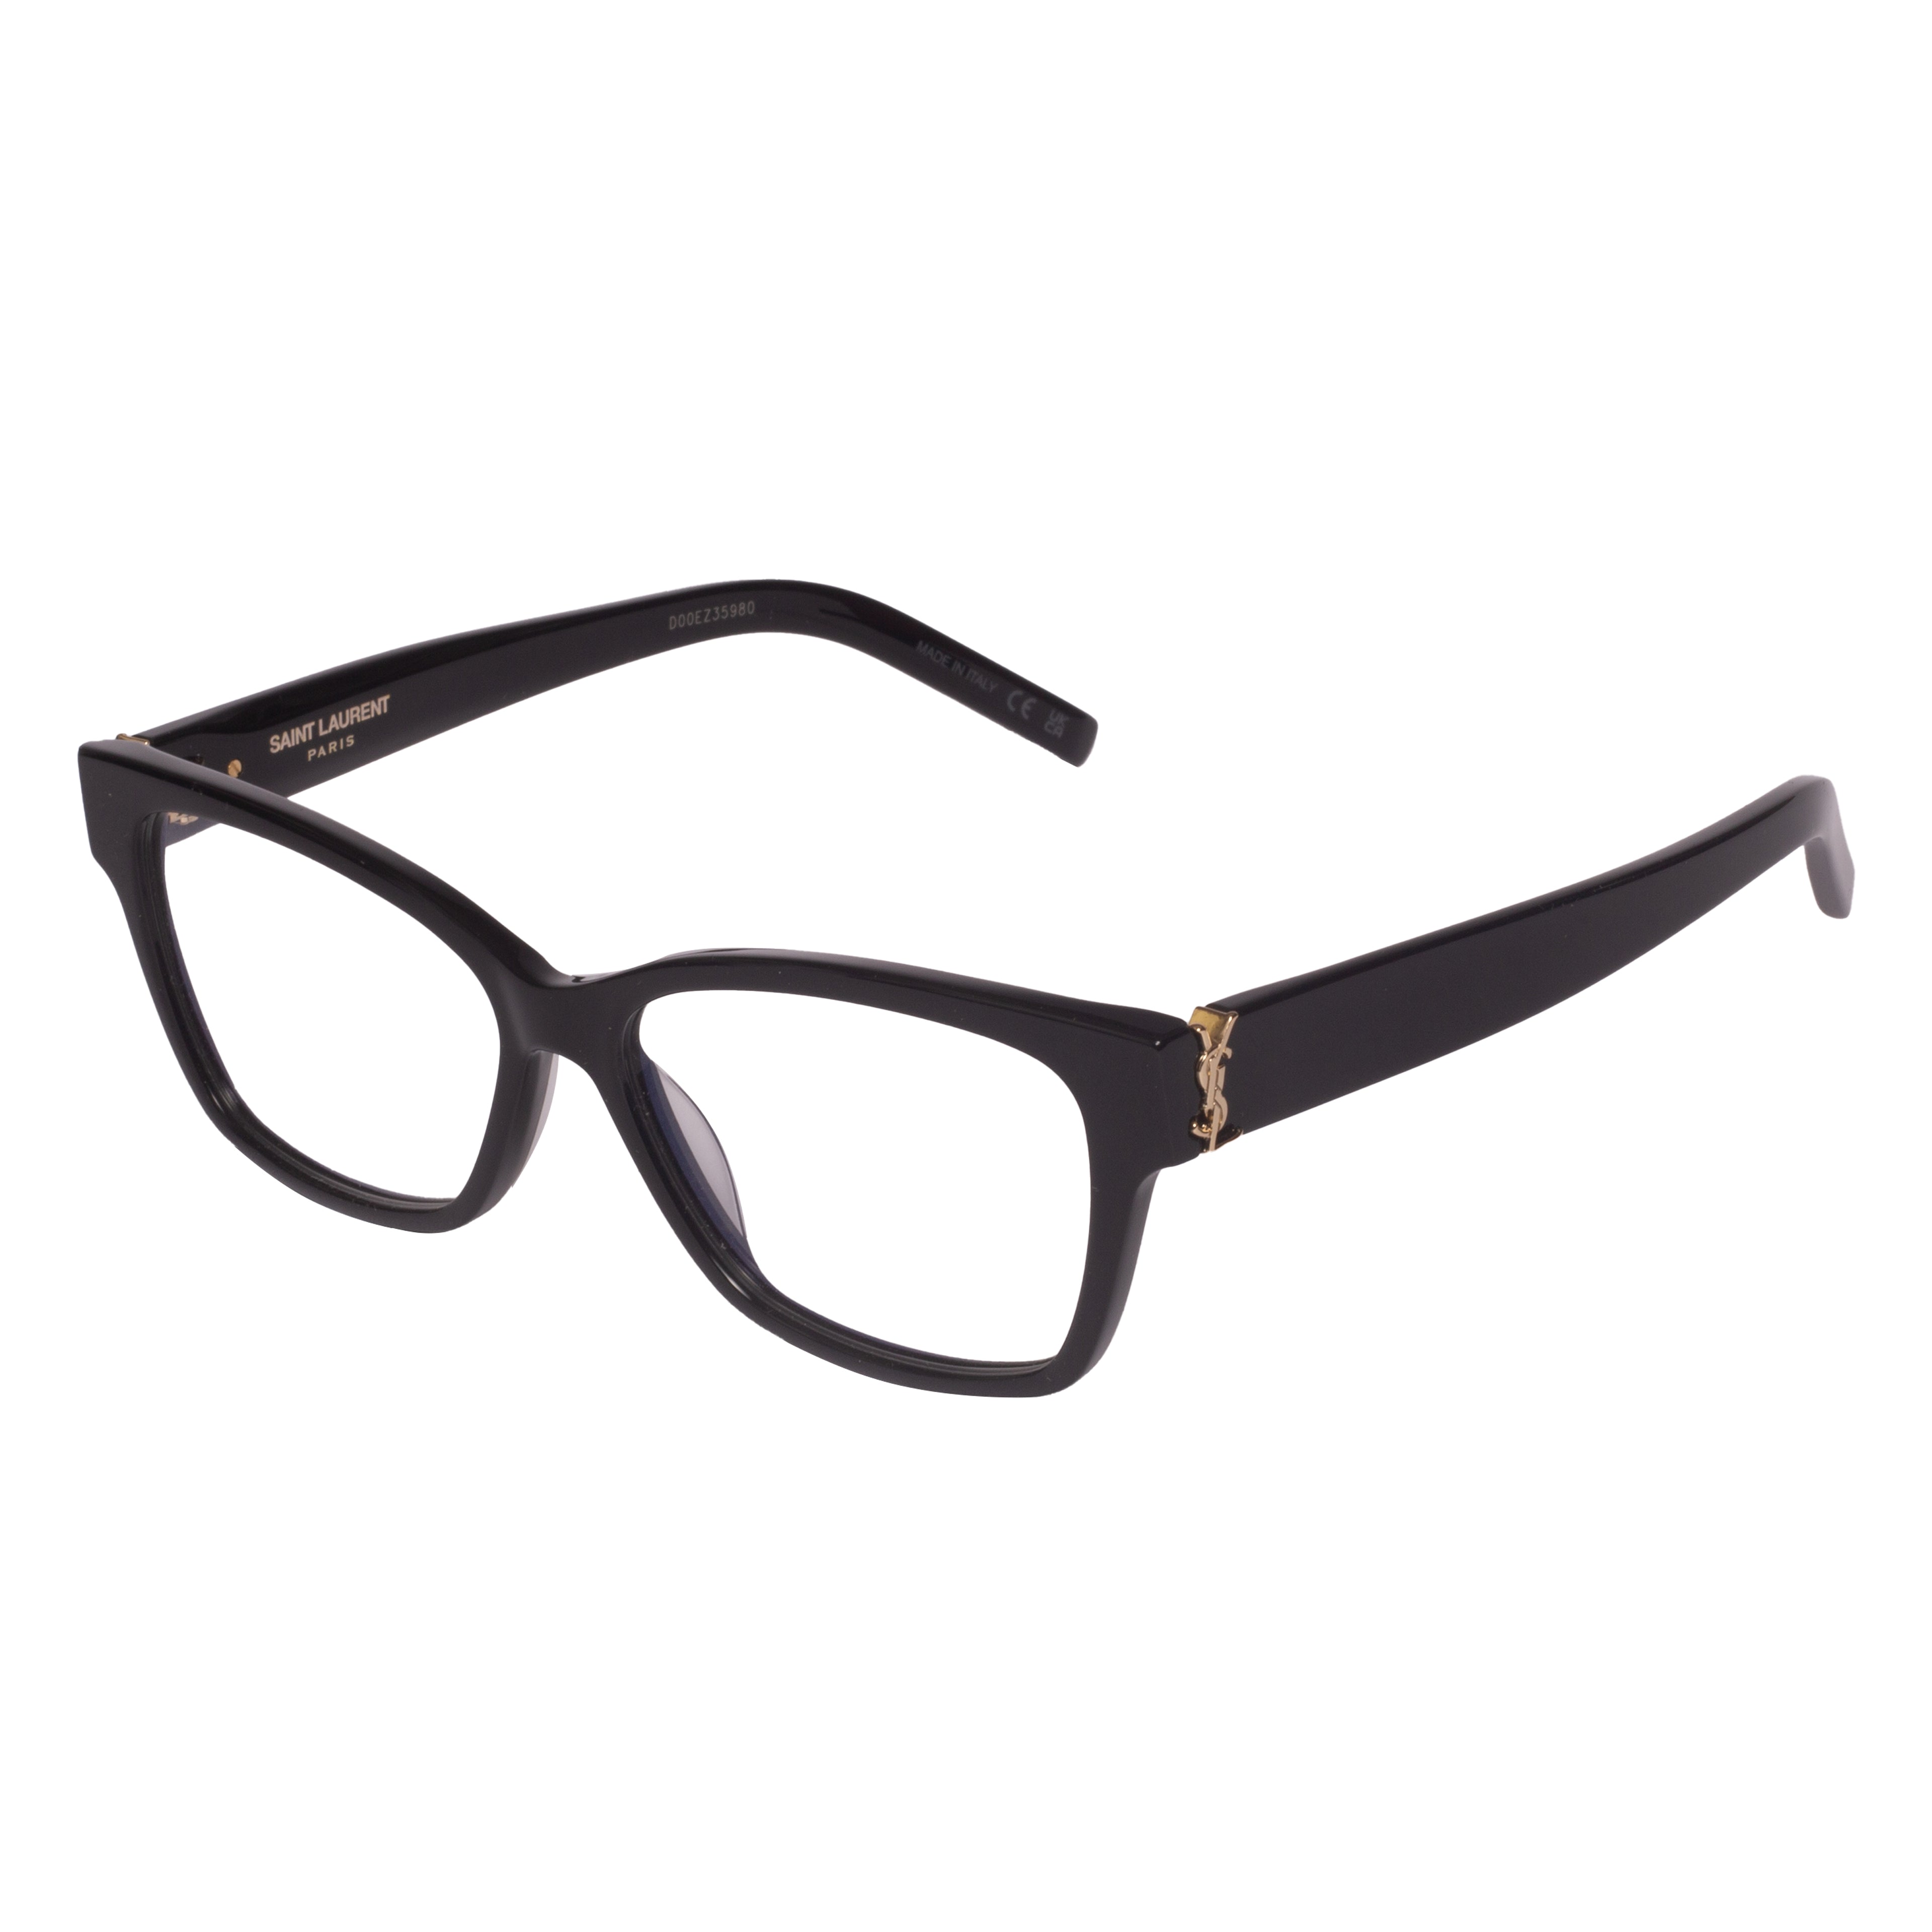 Saint Laurent-SL M116-55-001 Eyeglasses - Premium Eyeglasses from Saint Laurent - Just Rs. 26400! Shop now at Laxmi Opticians